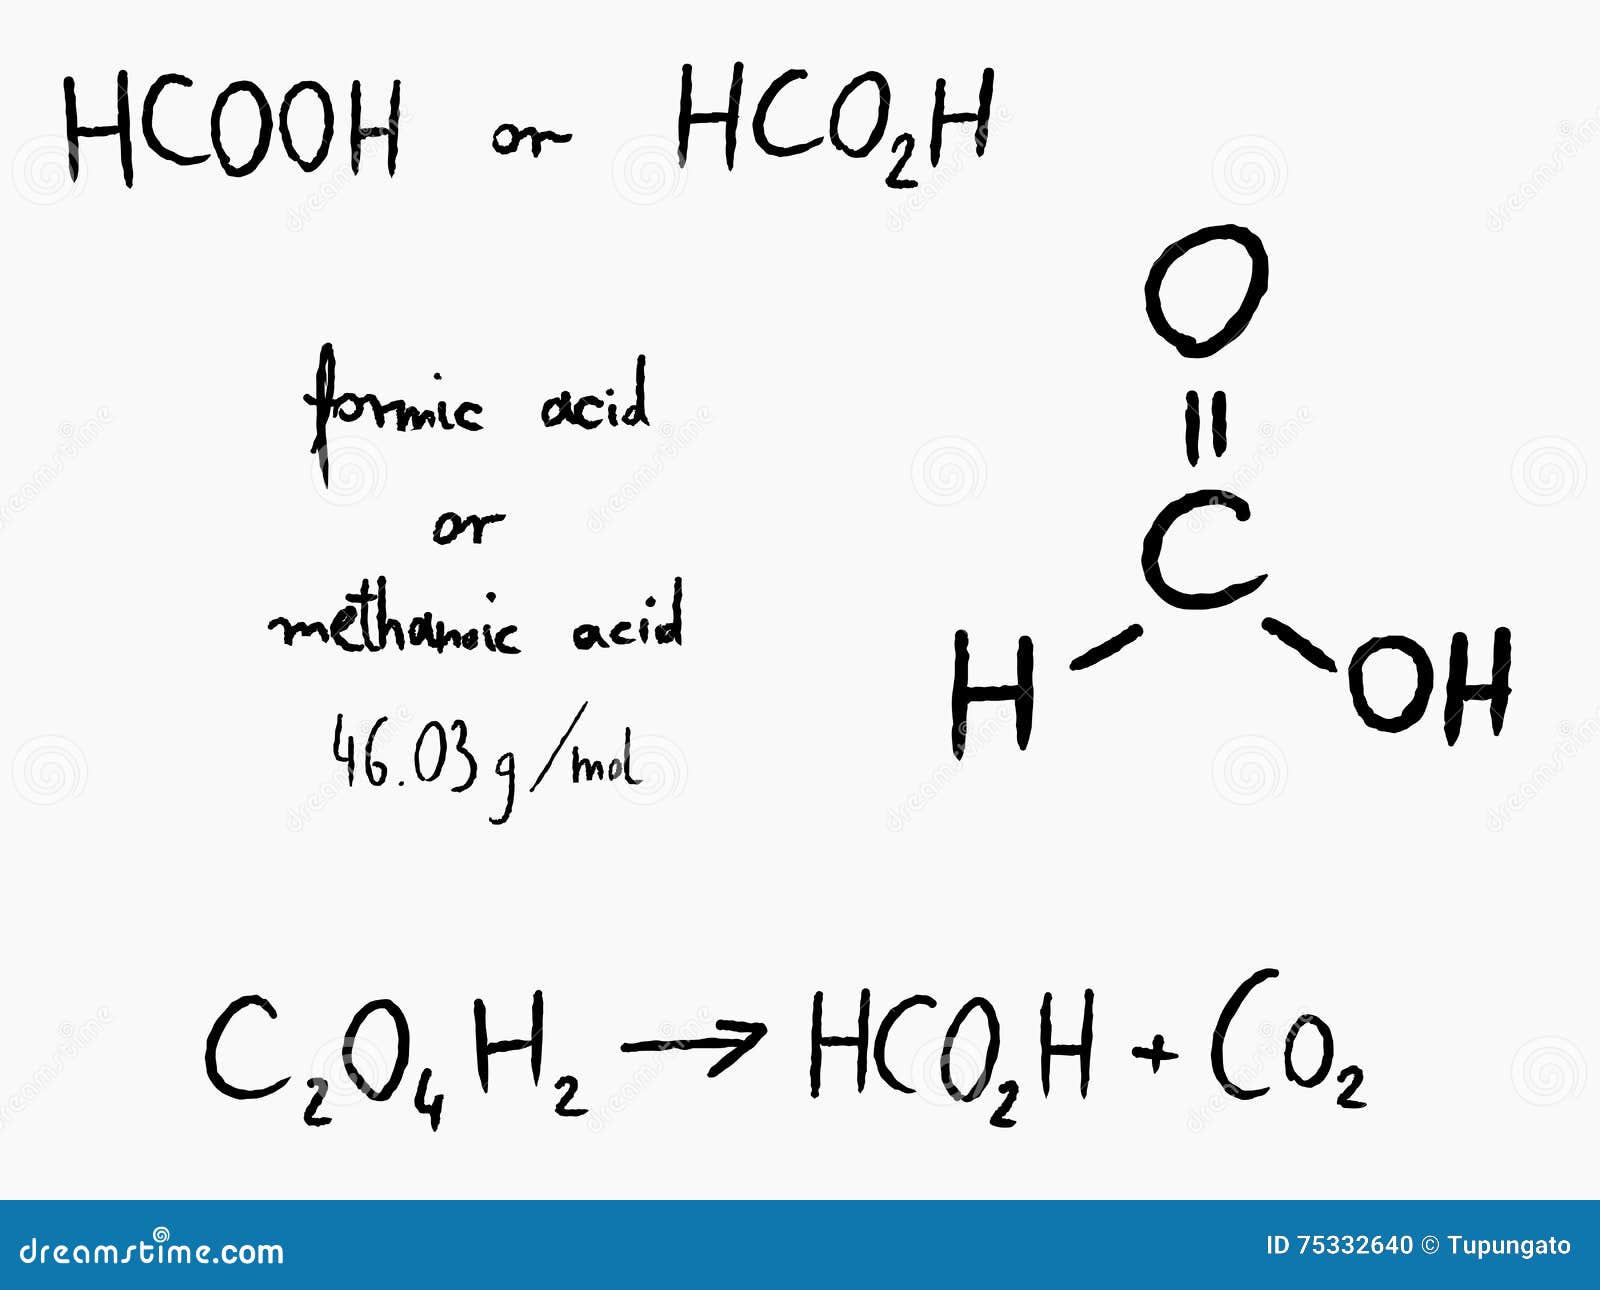 6 карбонат натрия азотная кислота. Муравьиная кислота и карбонат натрия. Сжигание муравьиной кислоты. Молекулярная формула муравьиной кислоты. Из бутана муравьиную кислоту.